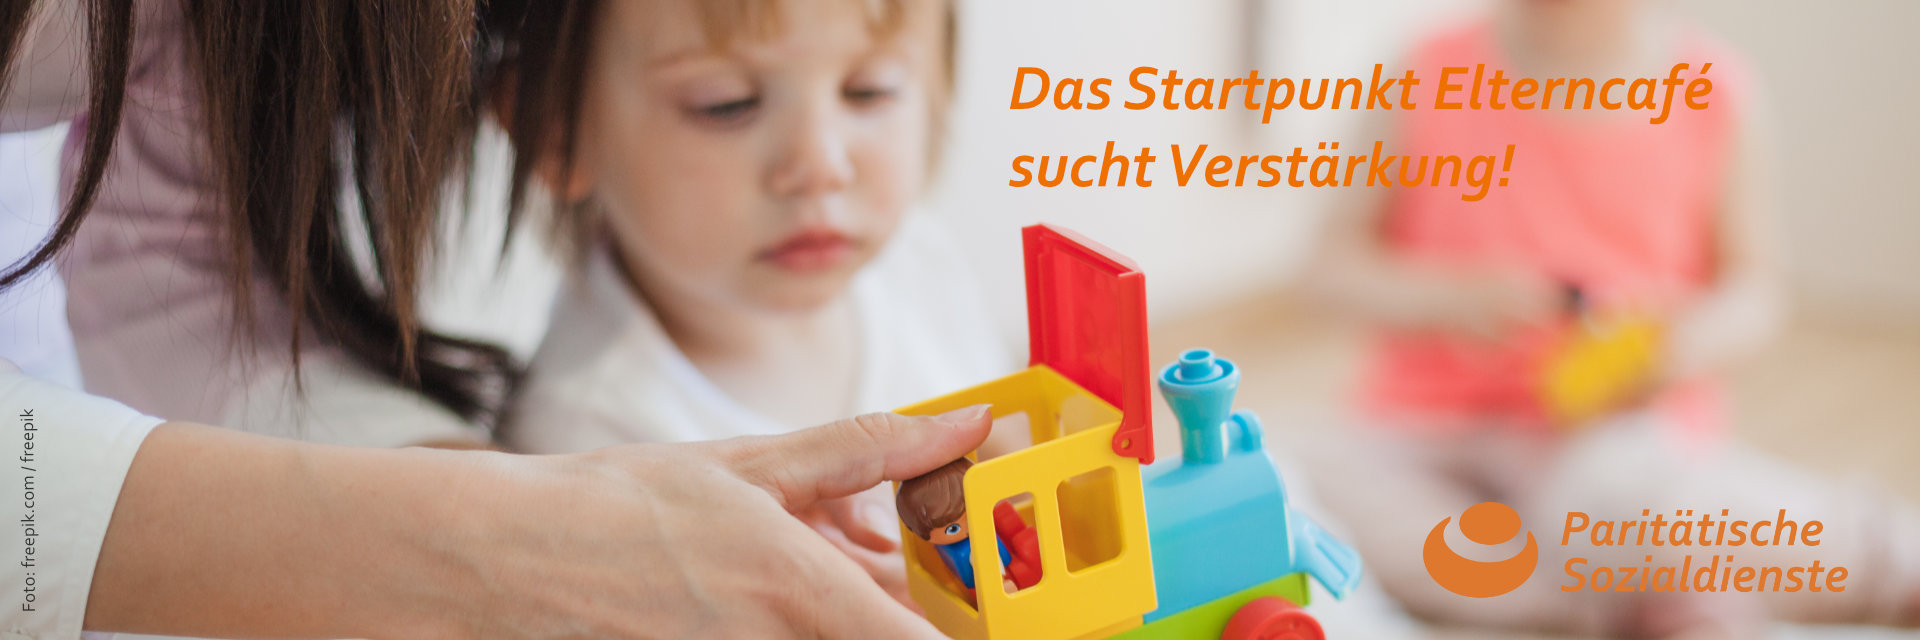 Eine erwachsene Person schaut mit einem Kind eine Spielzeug-Lok an. Text: Das Startpunkt Elterncafé sucht Verstärkung! Logo: Paritätische Sozialdienste